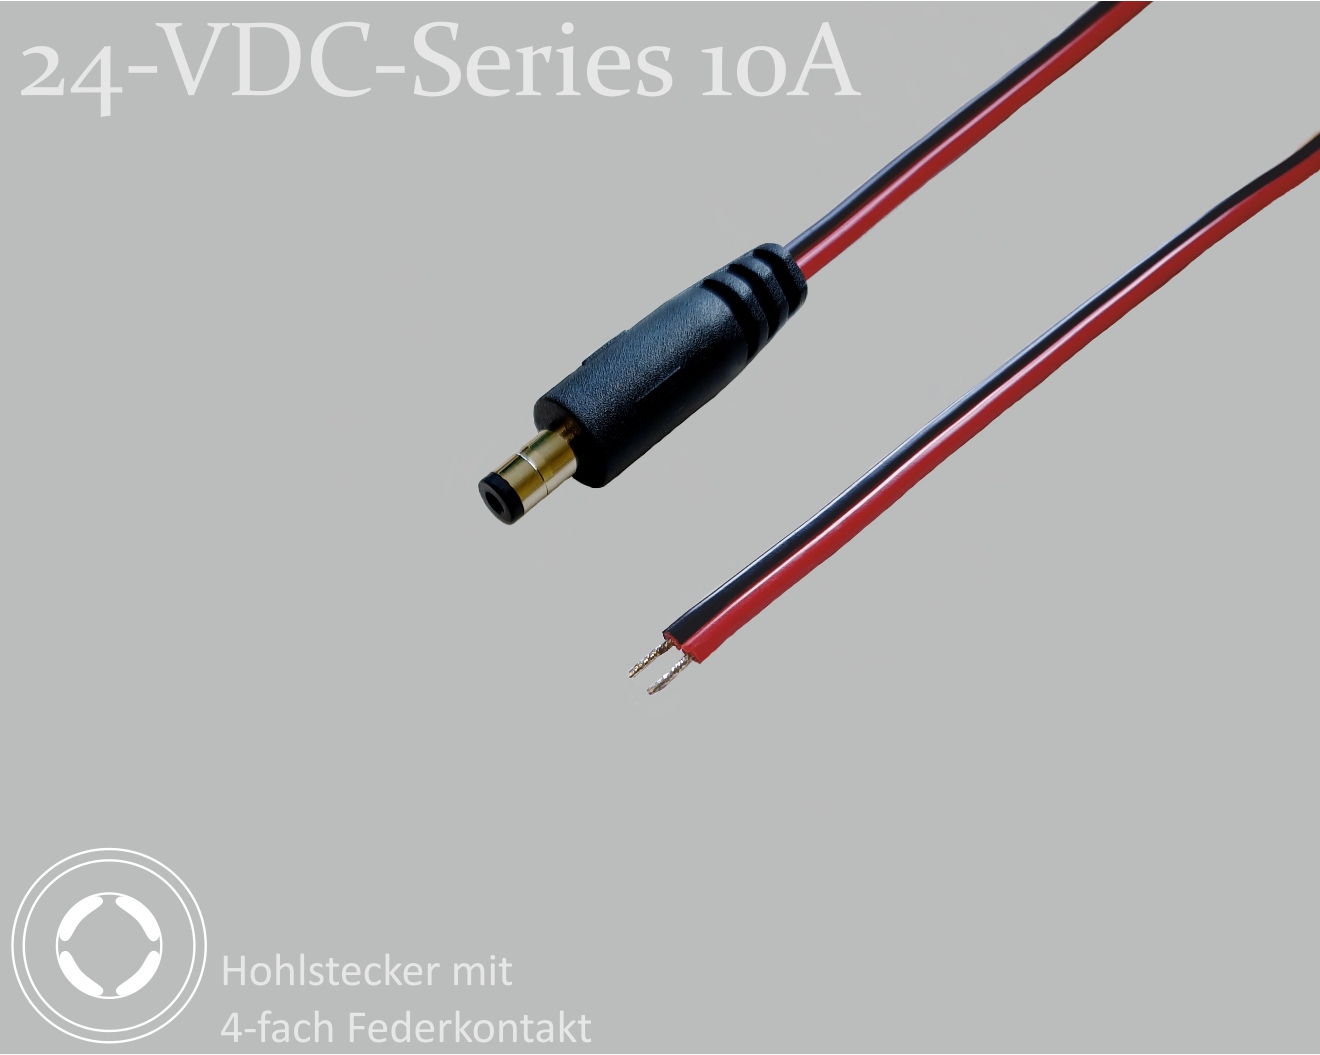 24-VDC-Series 10A, DC-Anschlusskabel, DC-Stecker mit 4-Federkontakt 2,1x5,5x9,5mm, Flachkabel 2x0,75mm², rot/schwarz, verzinnte Enden, 0,75m